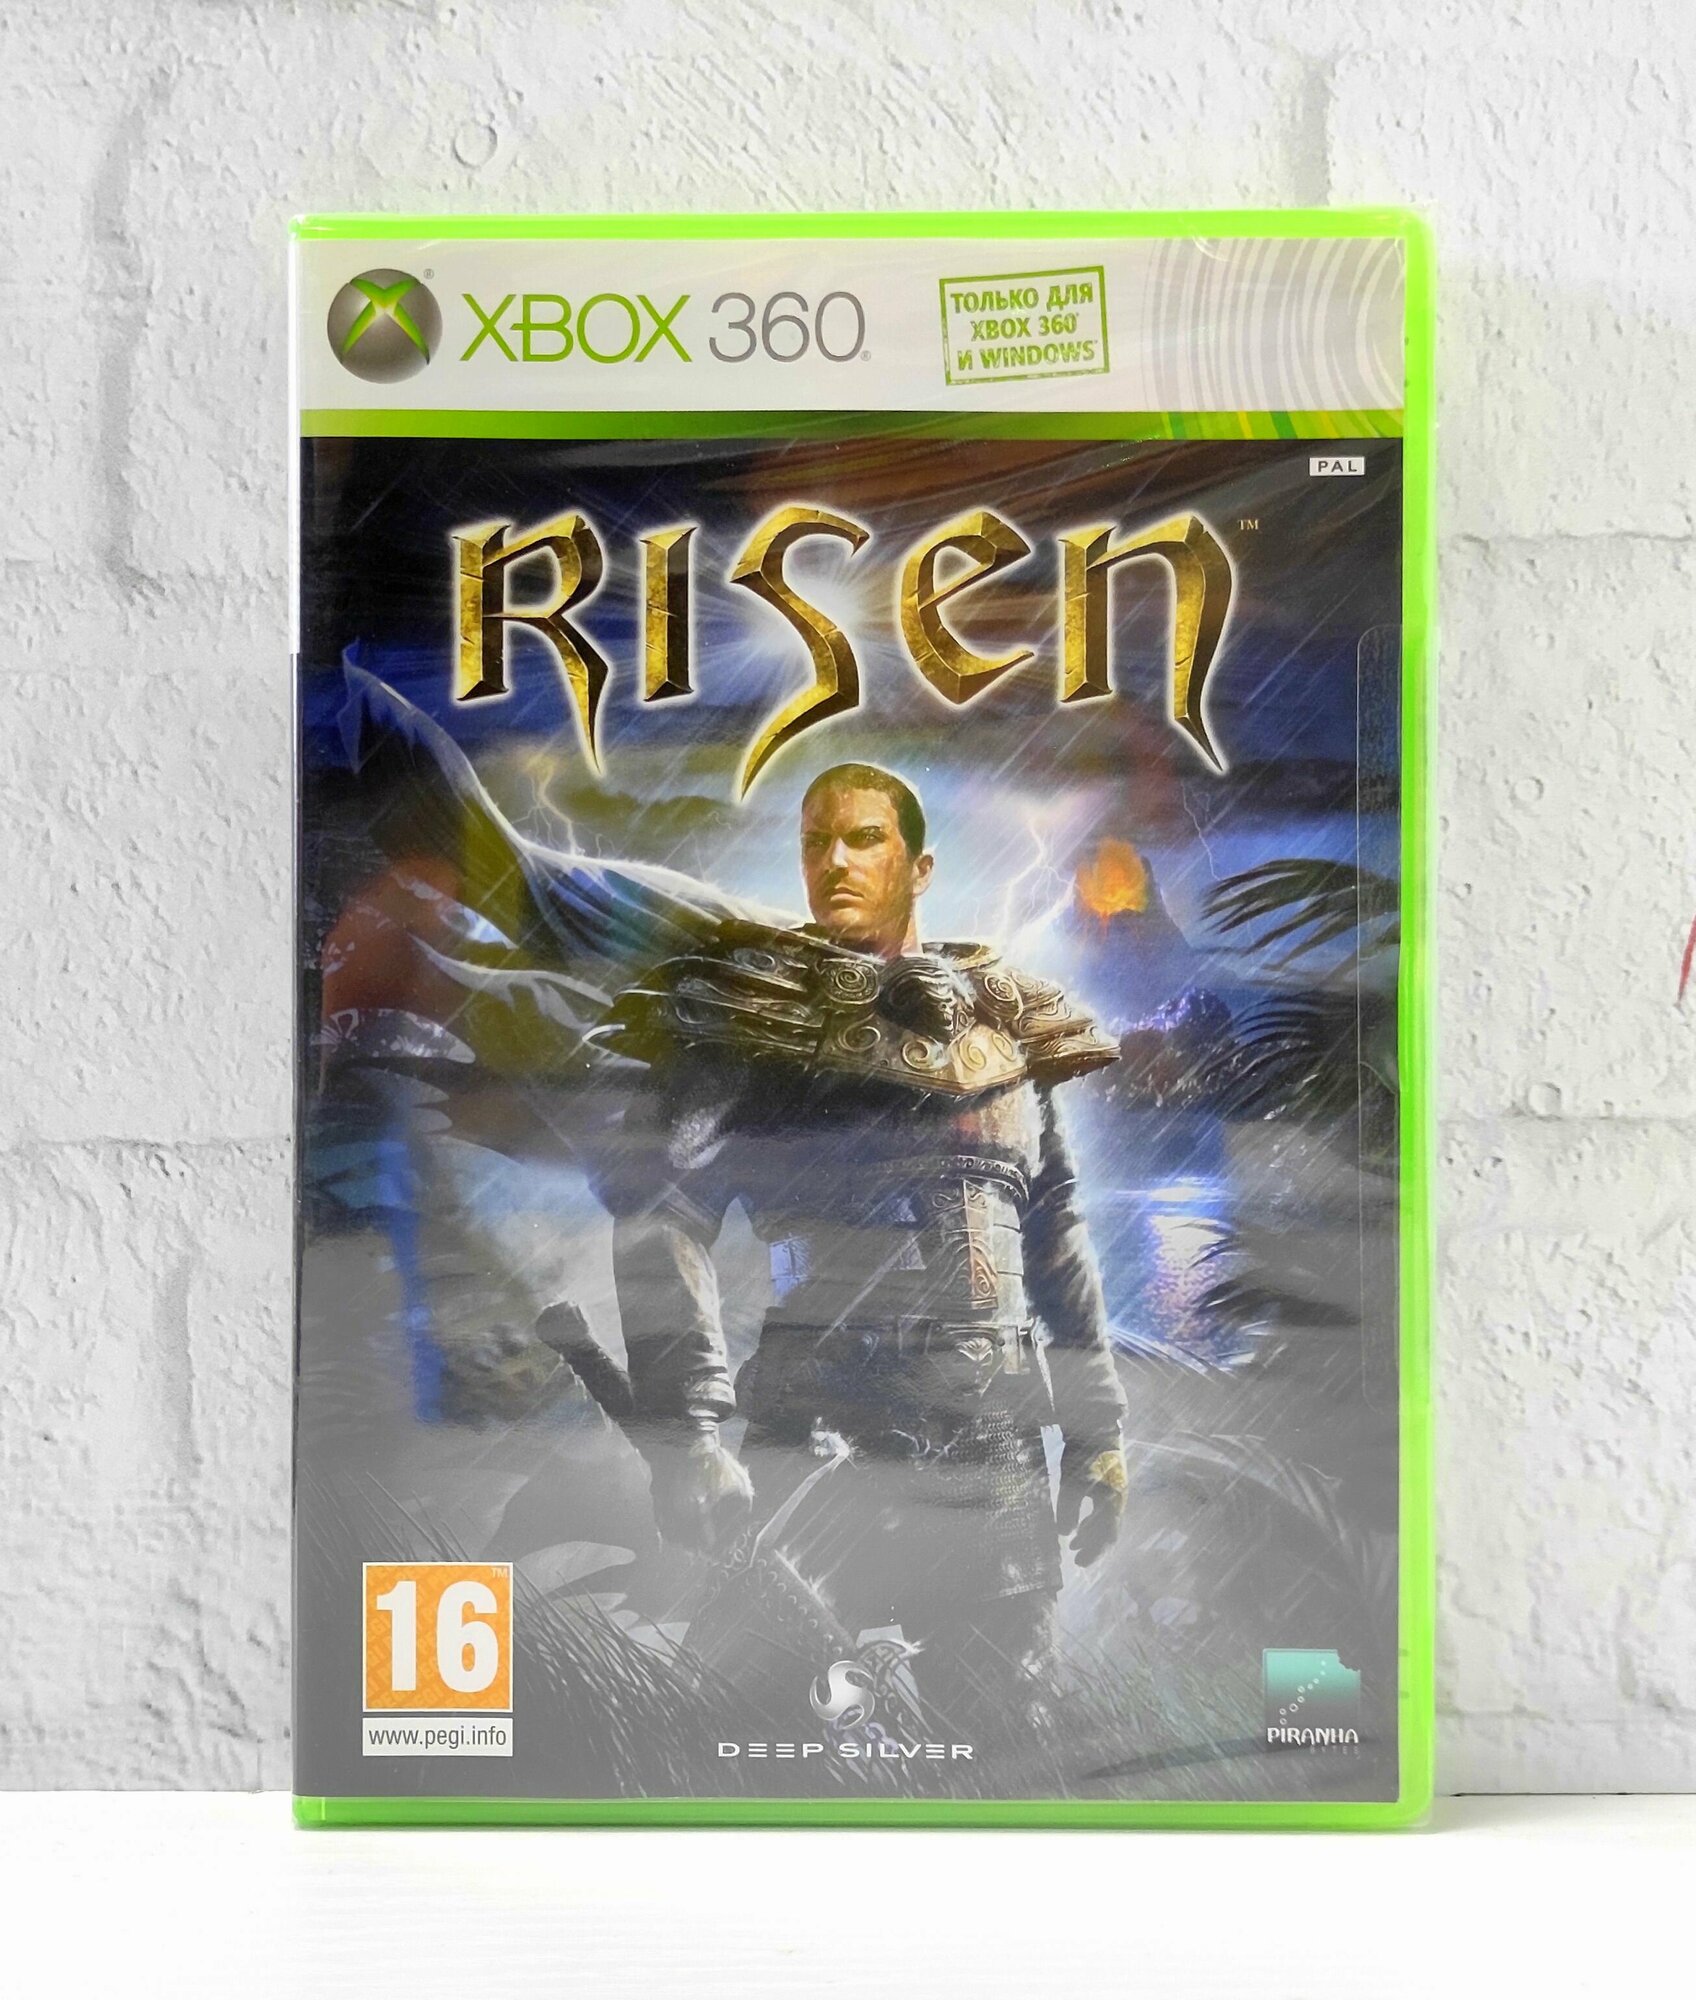 Risen Английская Версия Видеоигра на диске Xbox 360